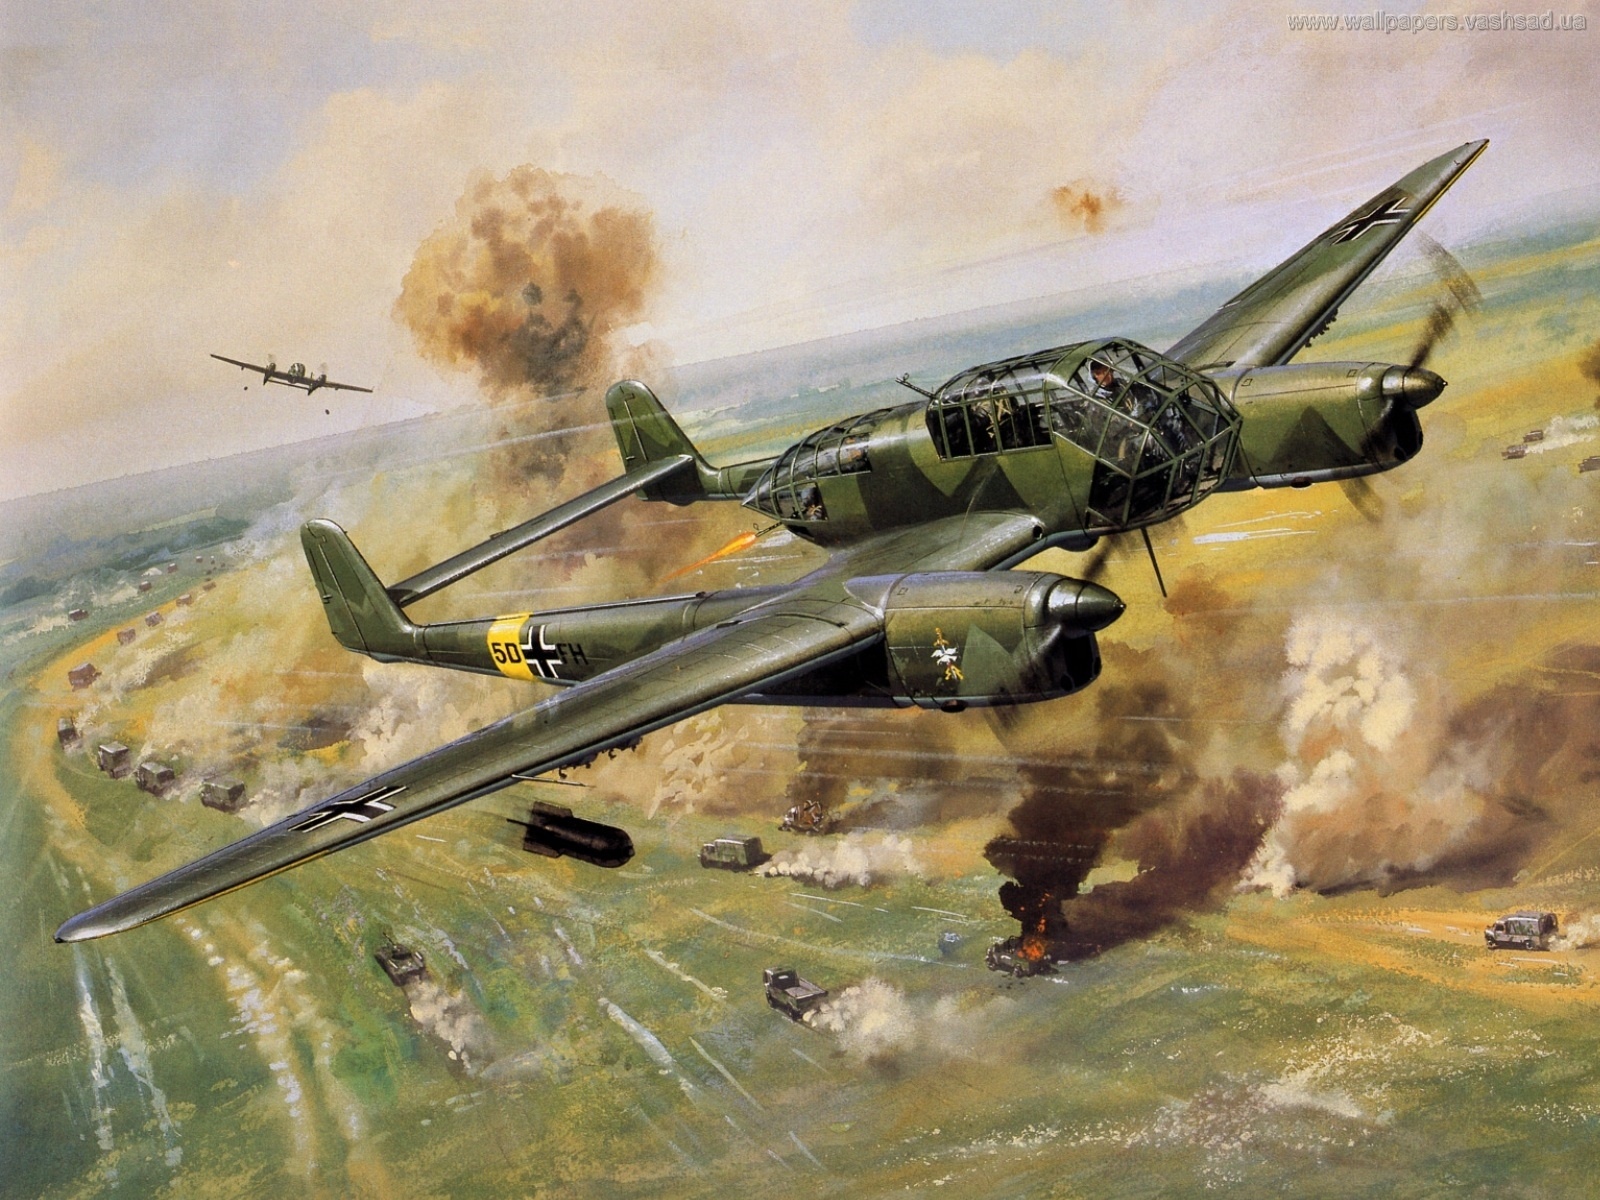 Подборка рисунков на тему авиации времен Второй Мировой Войны